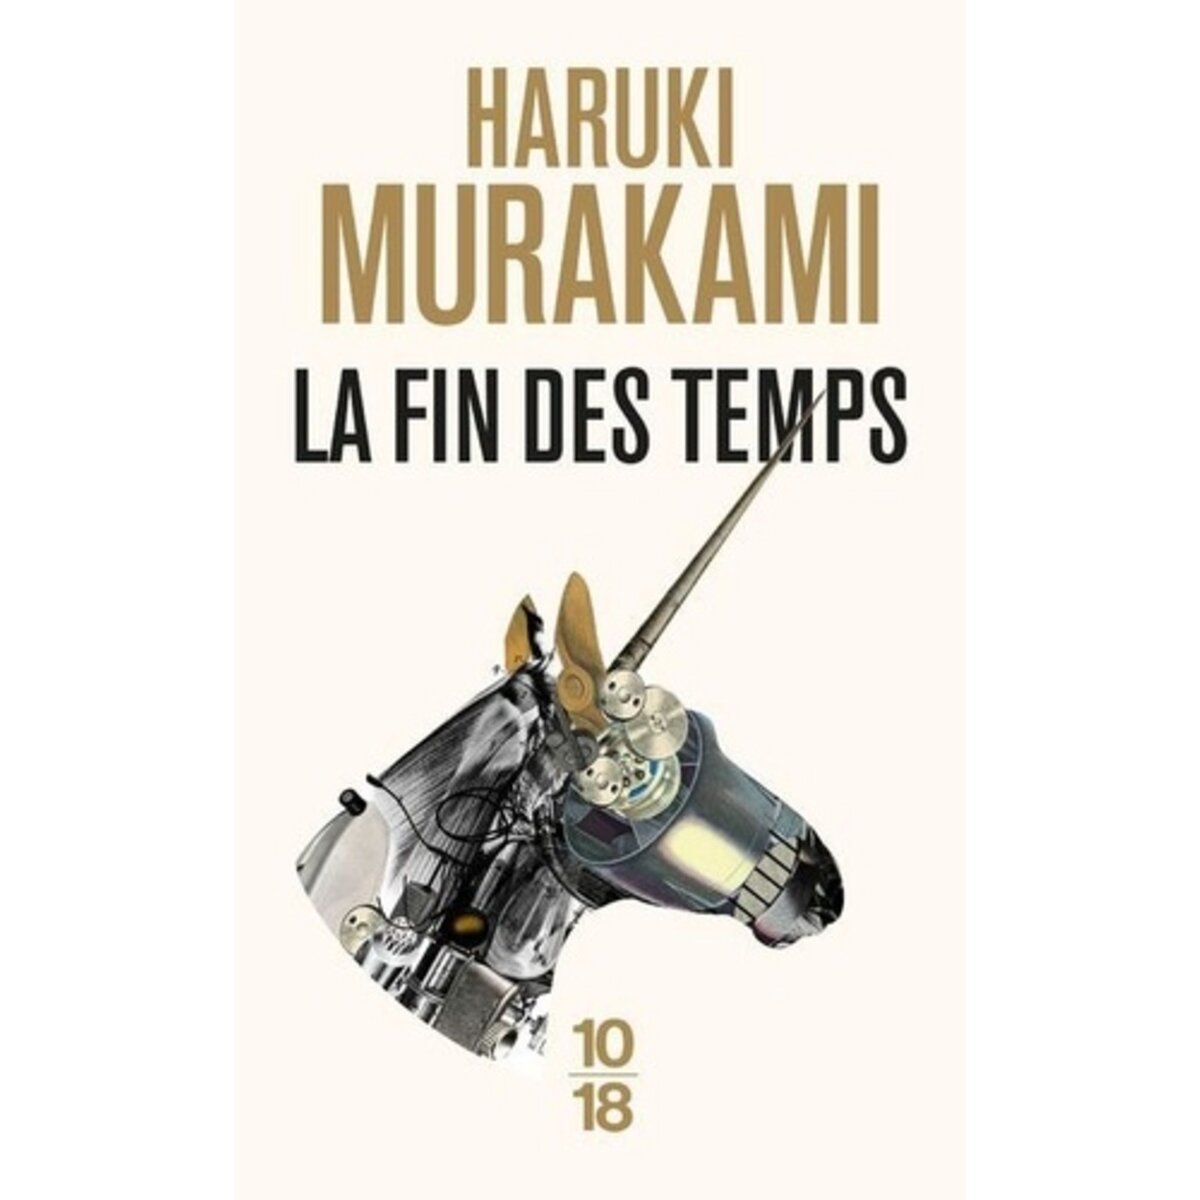  LA FIN DES TEMPS, Murakami Haruki